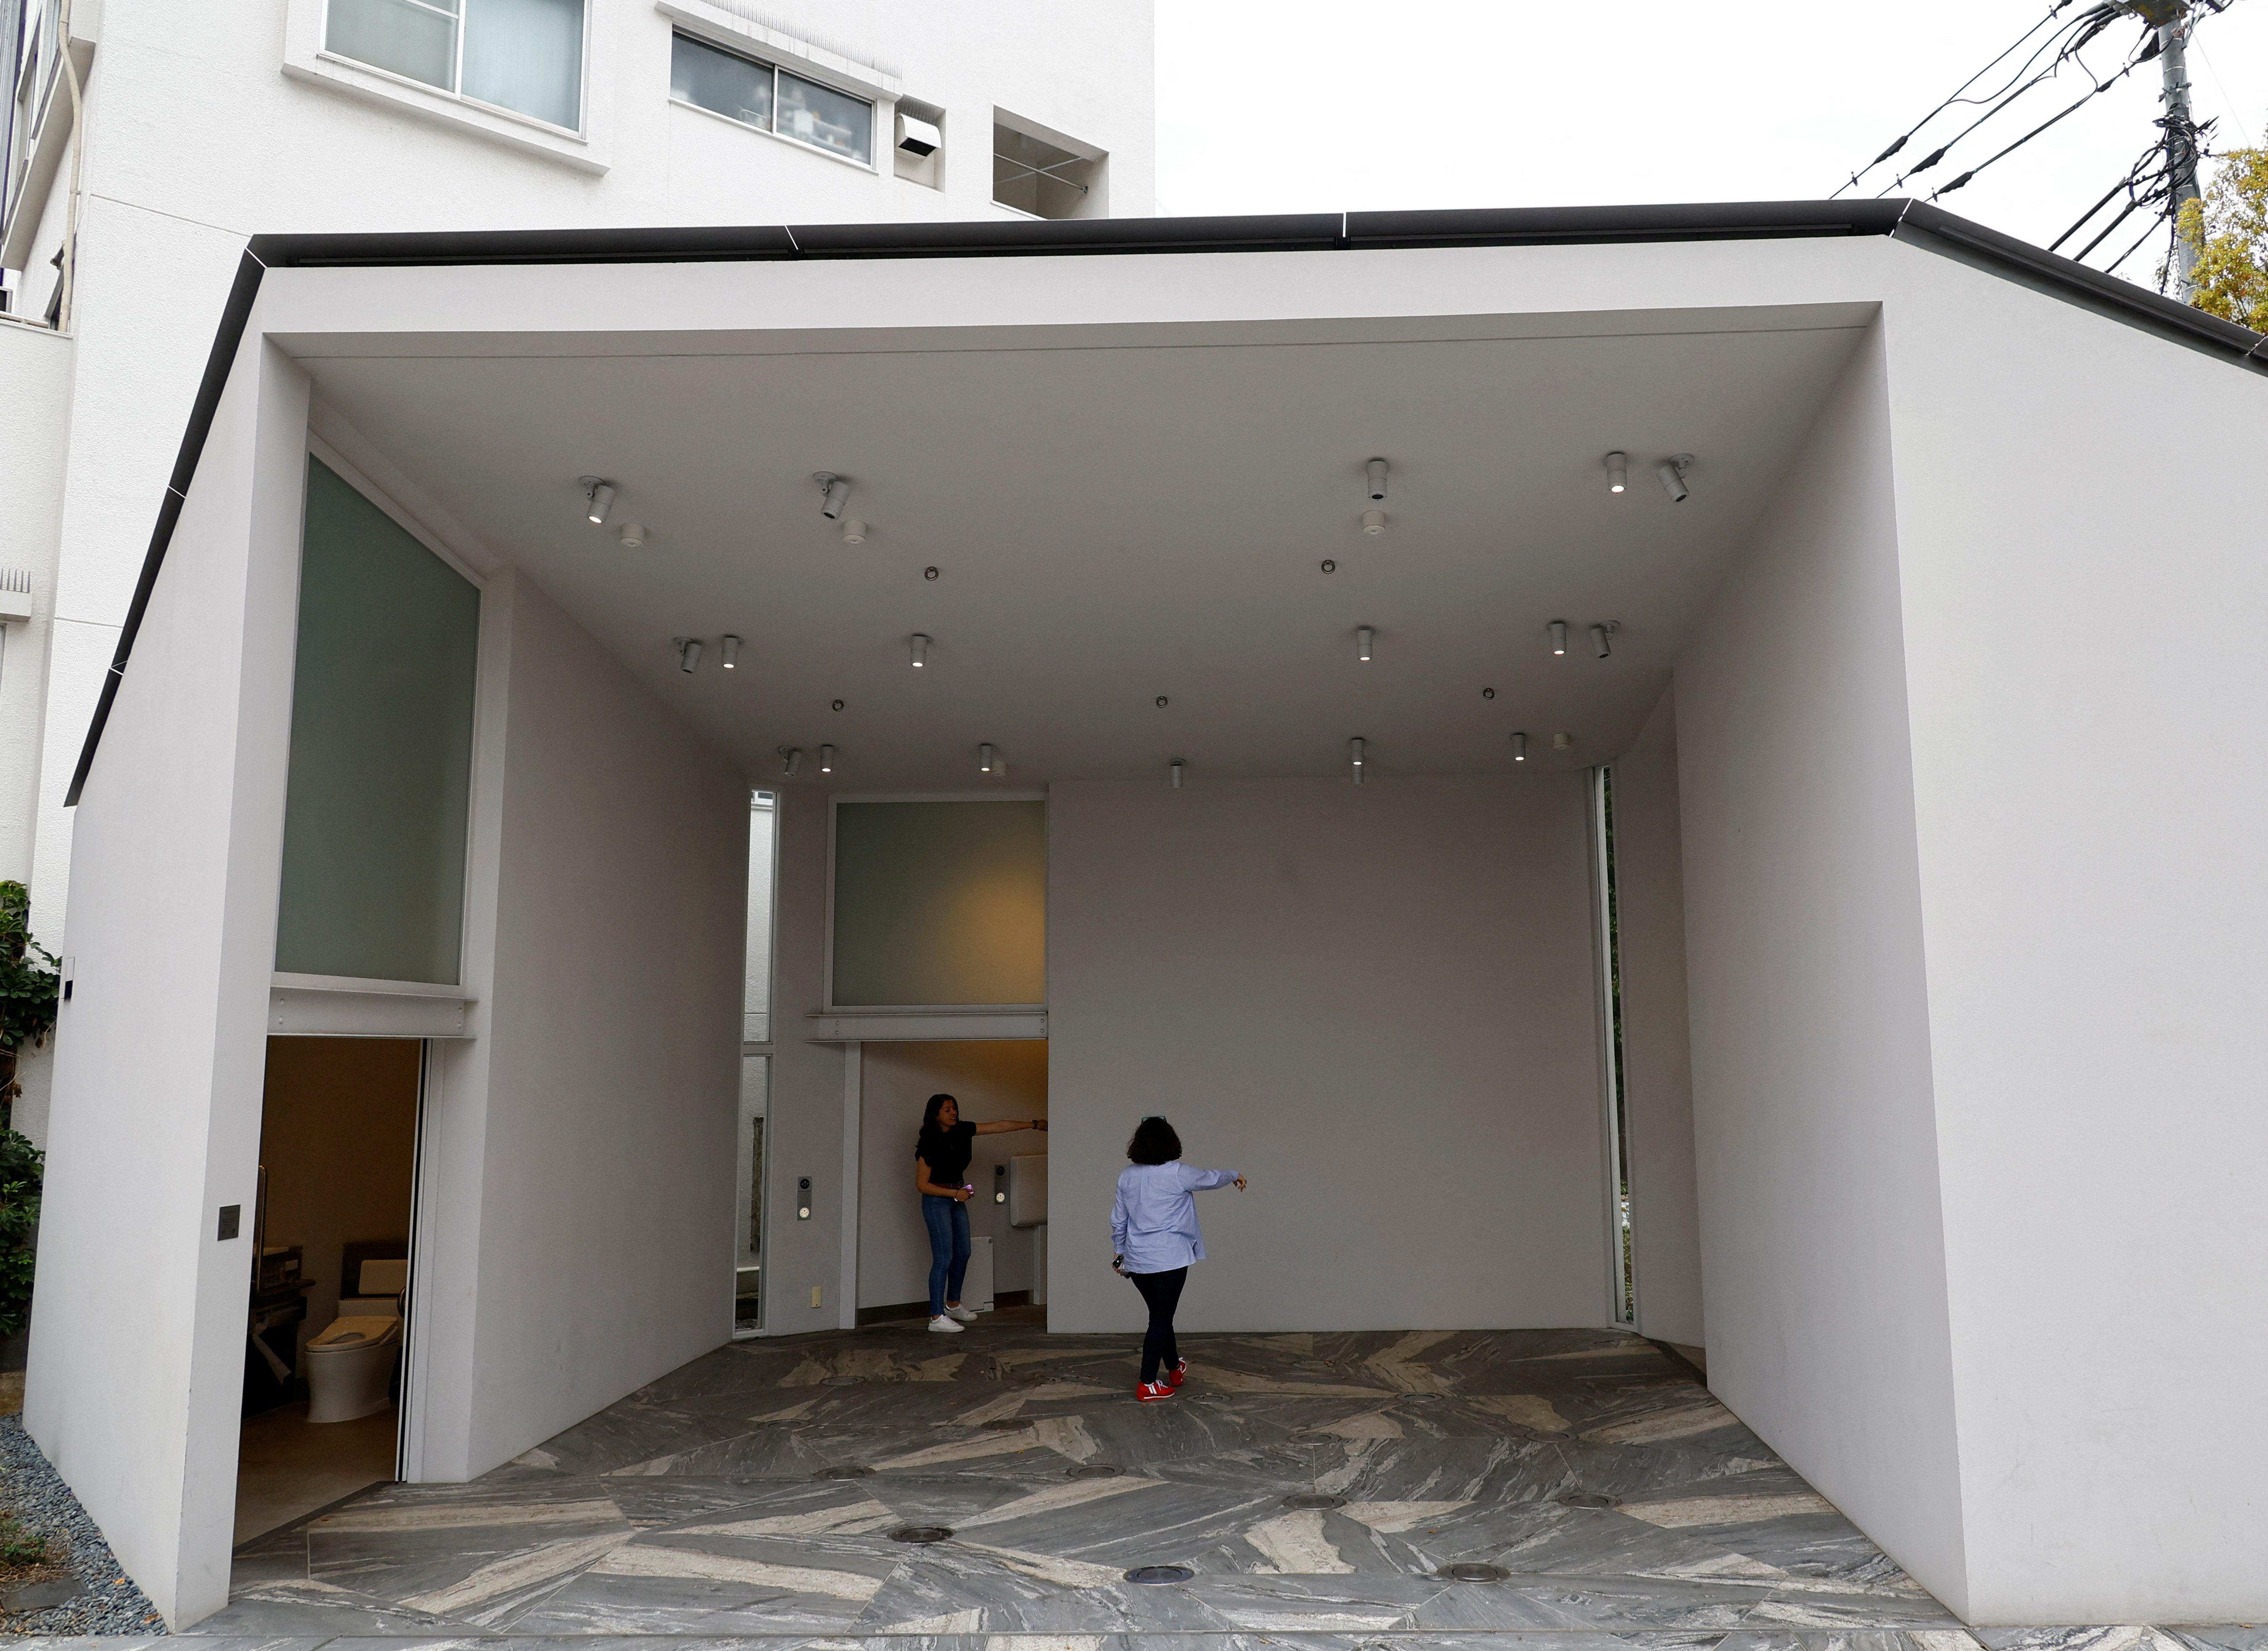 Tokyo's Shibuya ward starts architect-designed public toilet tours